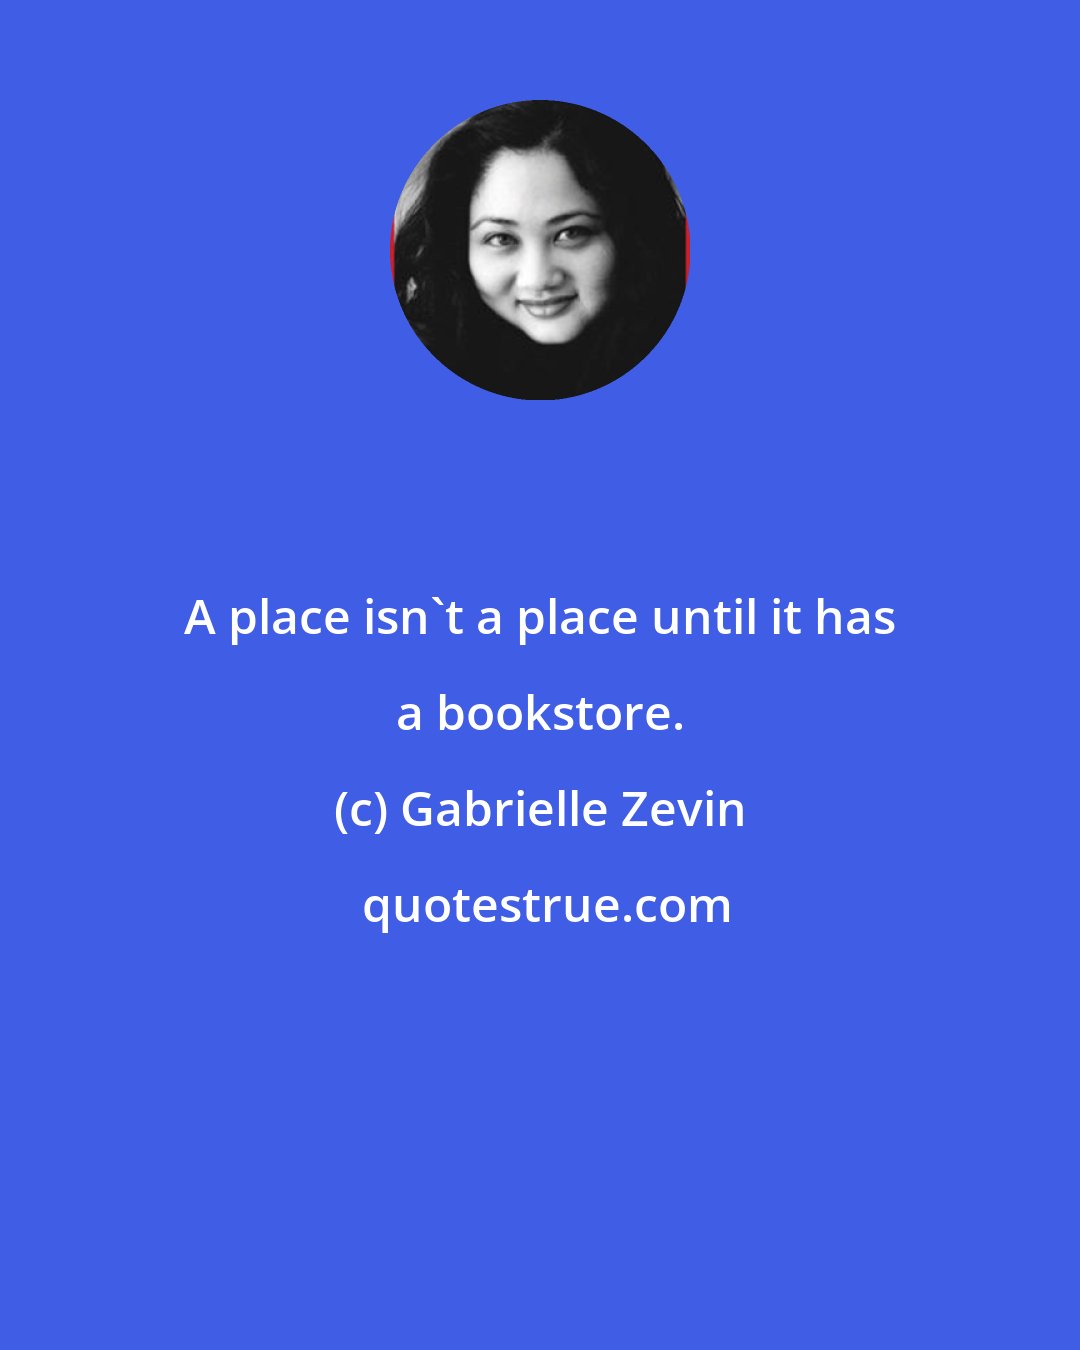 Gabrielle Zevin: A place isn't a place until it has a bookstore.